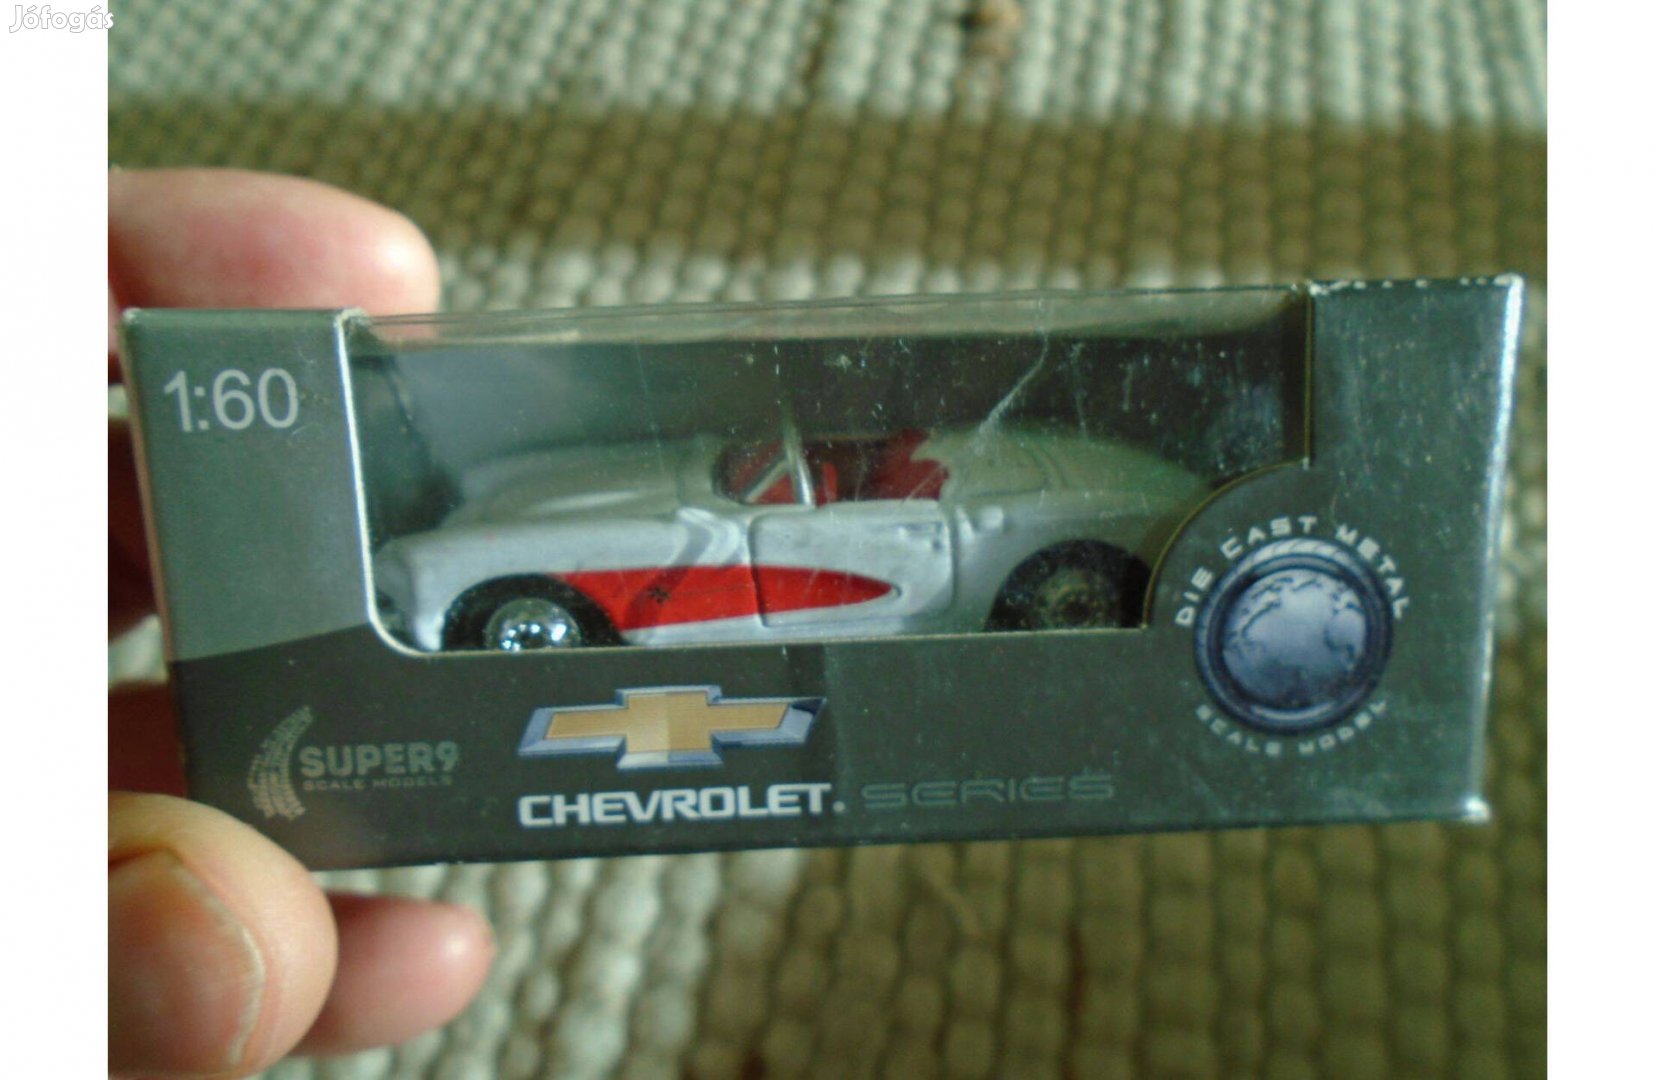 Chevrolet - fehér-piros színű Autó Modell - Welly Super 9 - 1:60-as